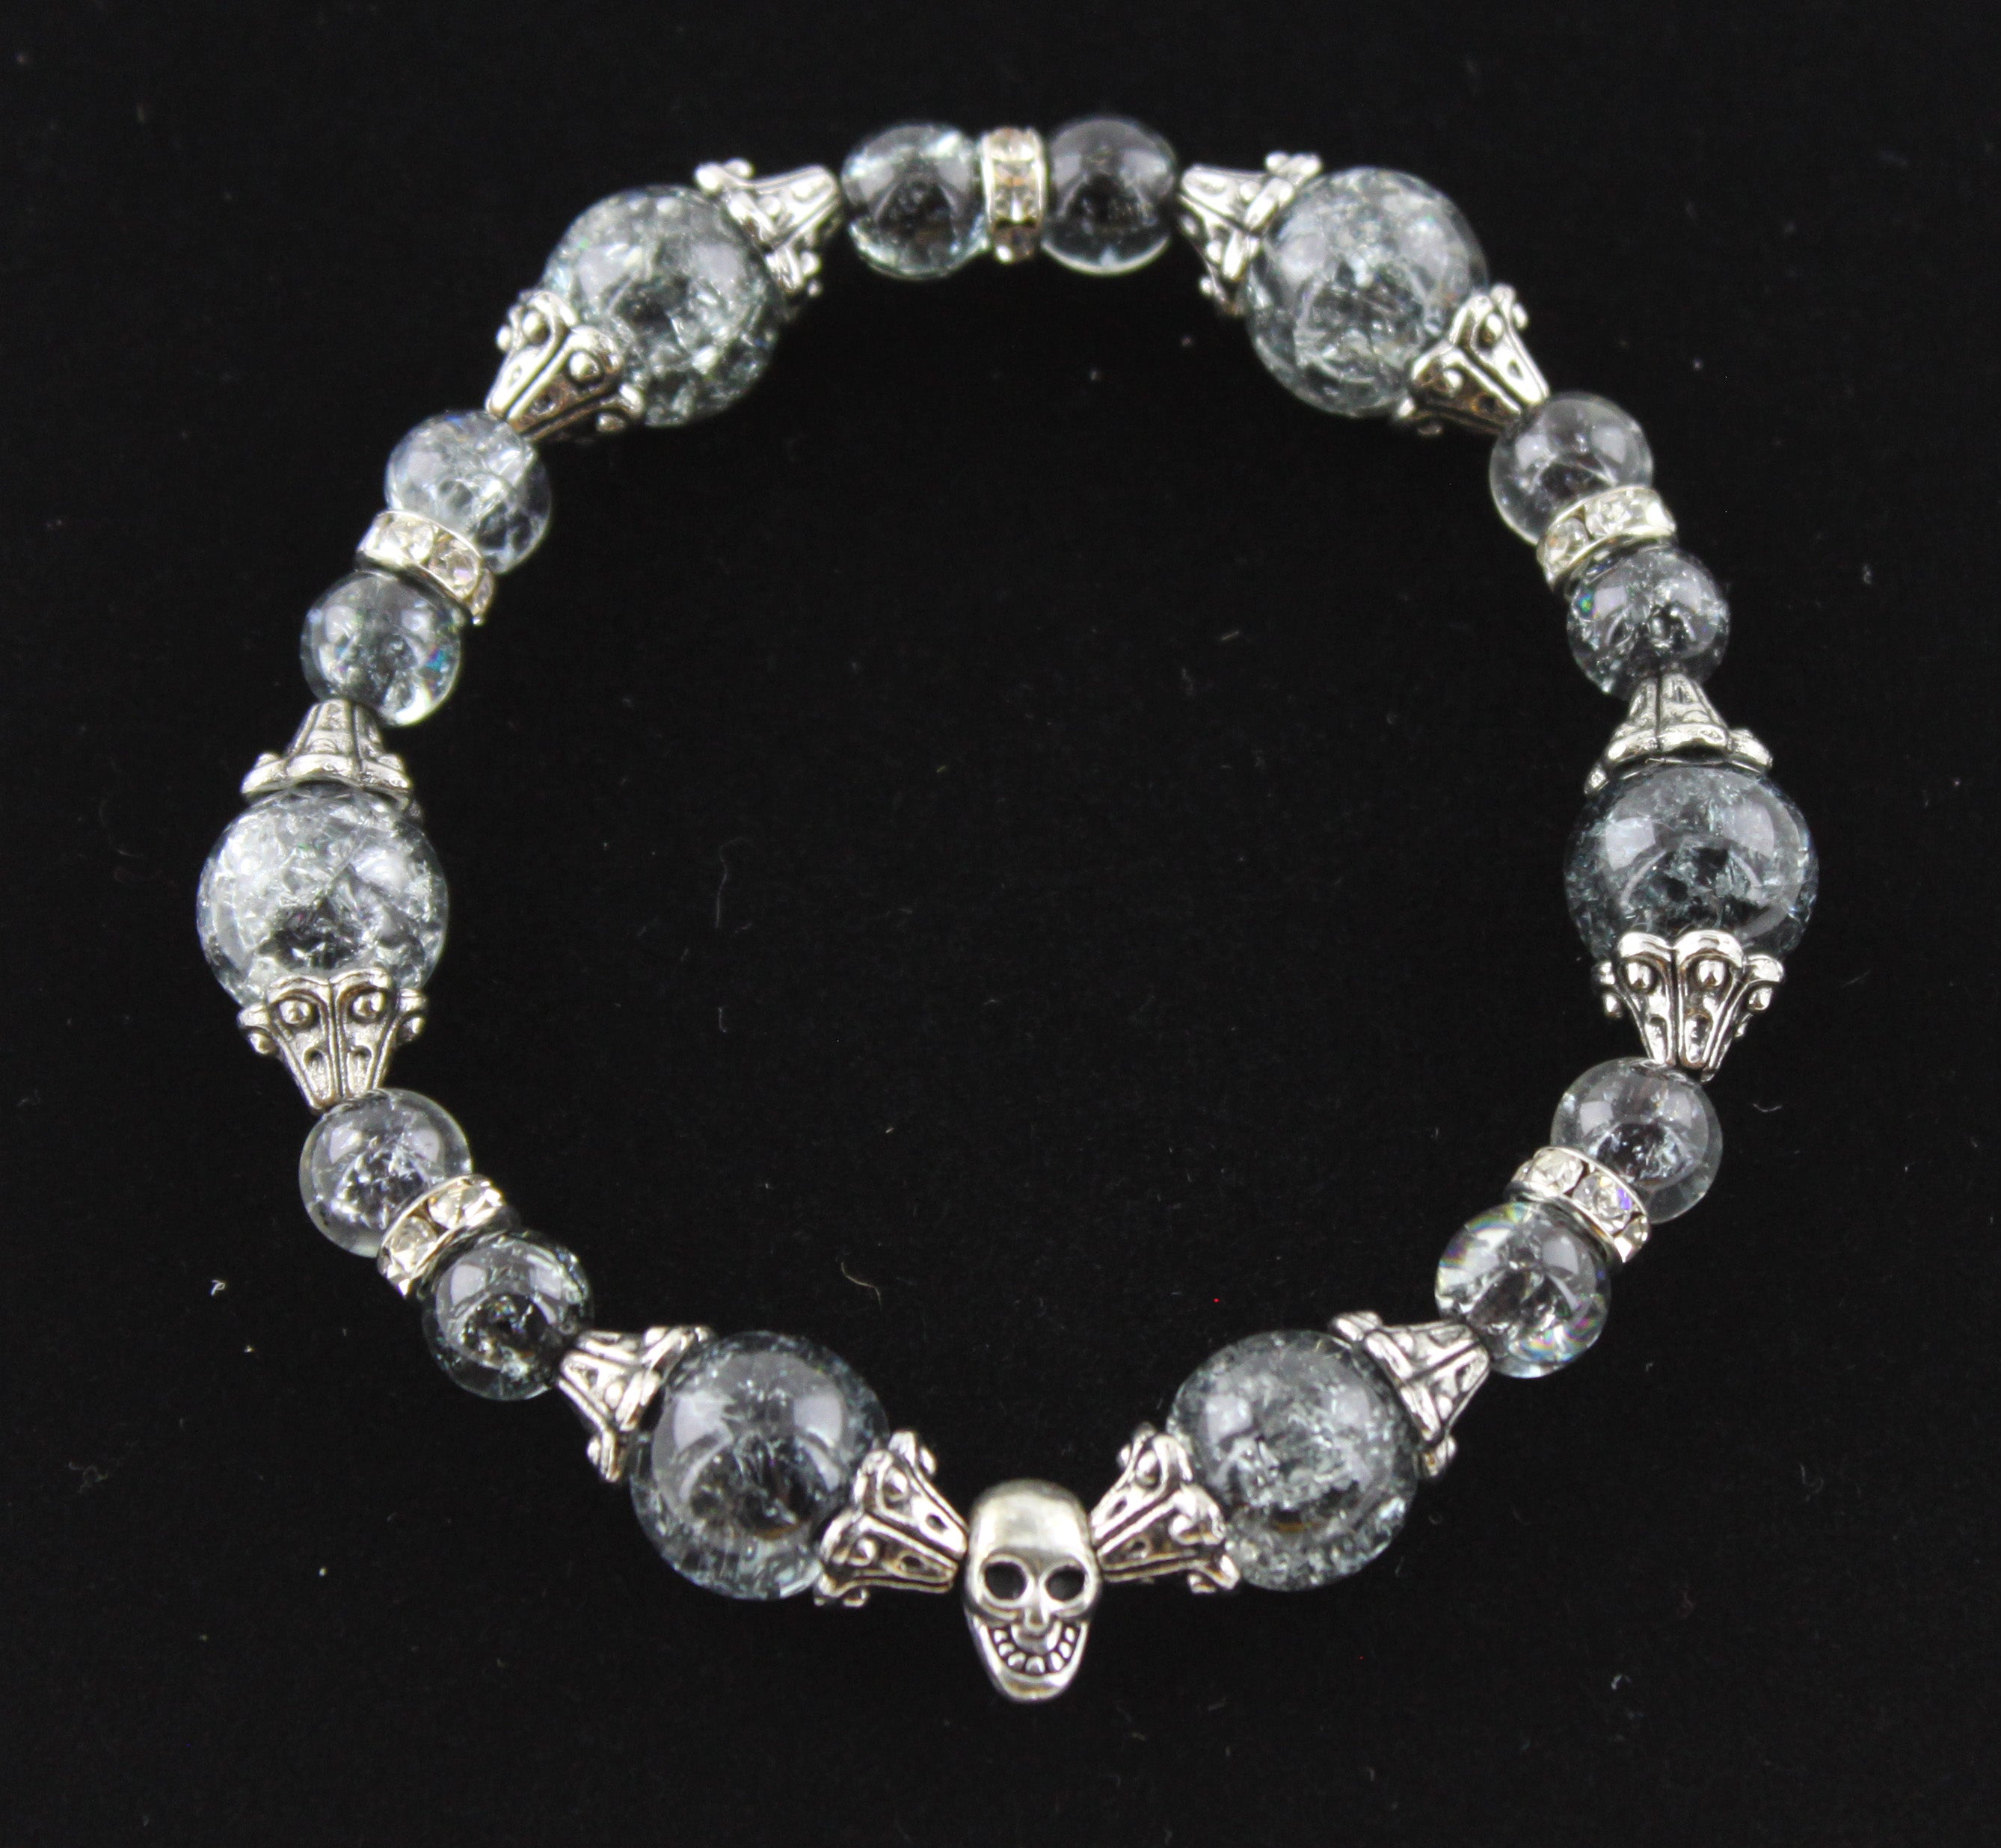 Single Skull Cracked Grey Glass Bead Bracelet